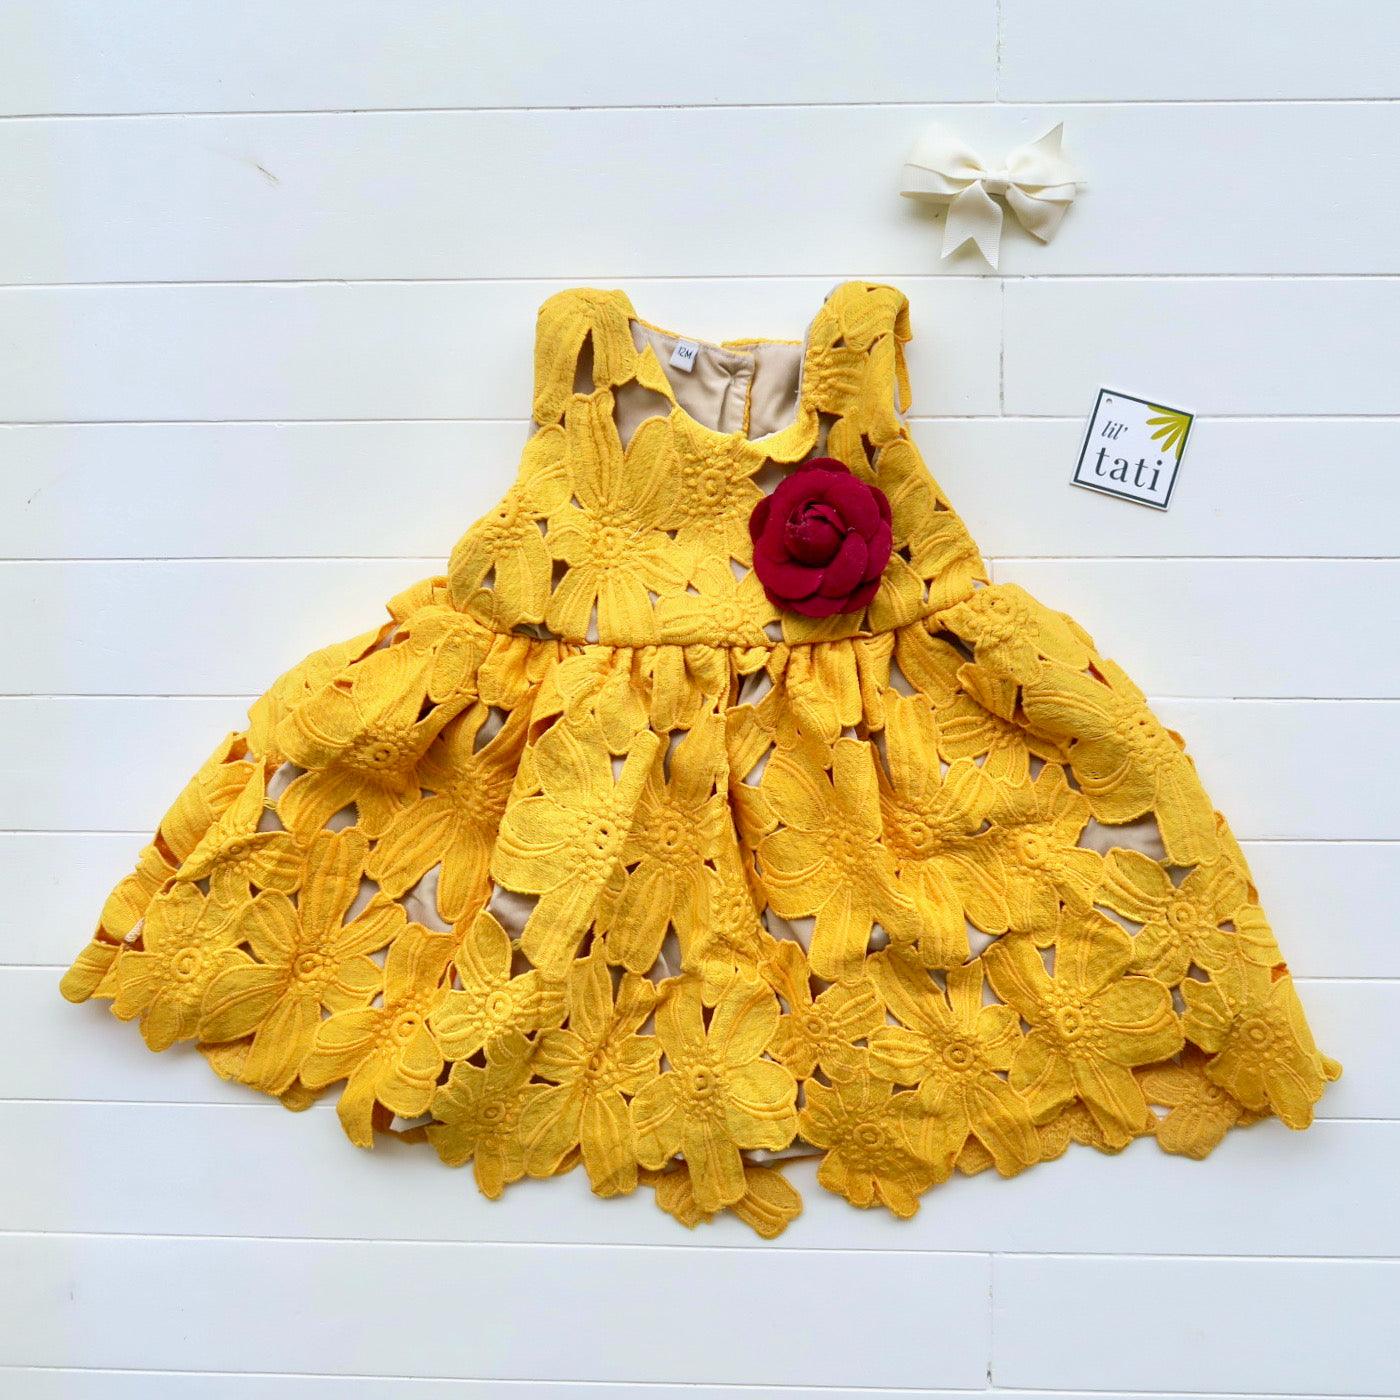 Iris Dress in Mustard Flower Lace - Lil' Tati